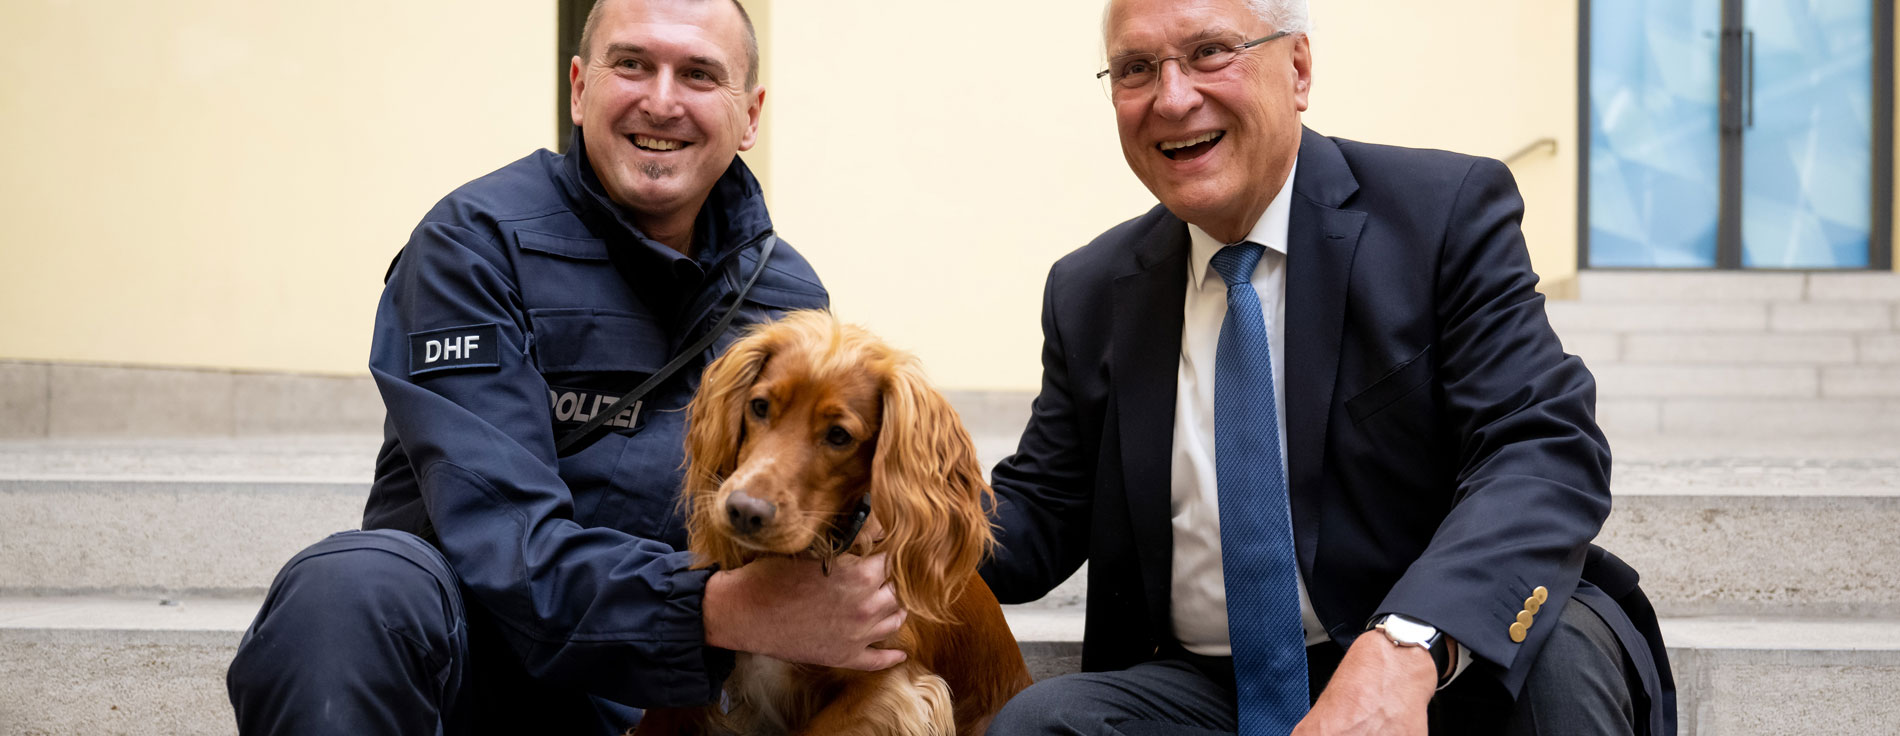 Innenminister Joachim Herrmann mit Spürhund und Polizist